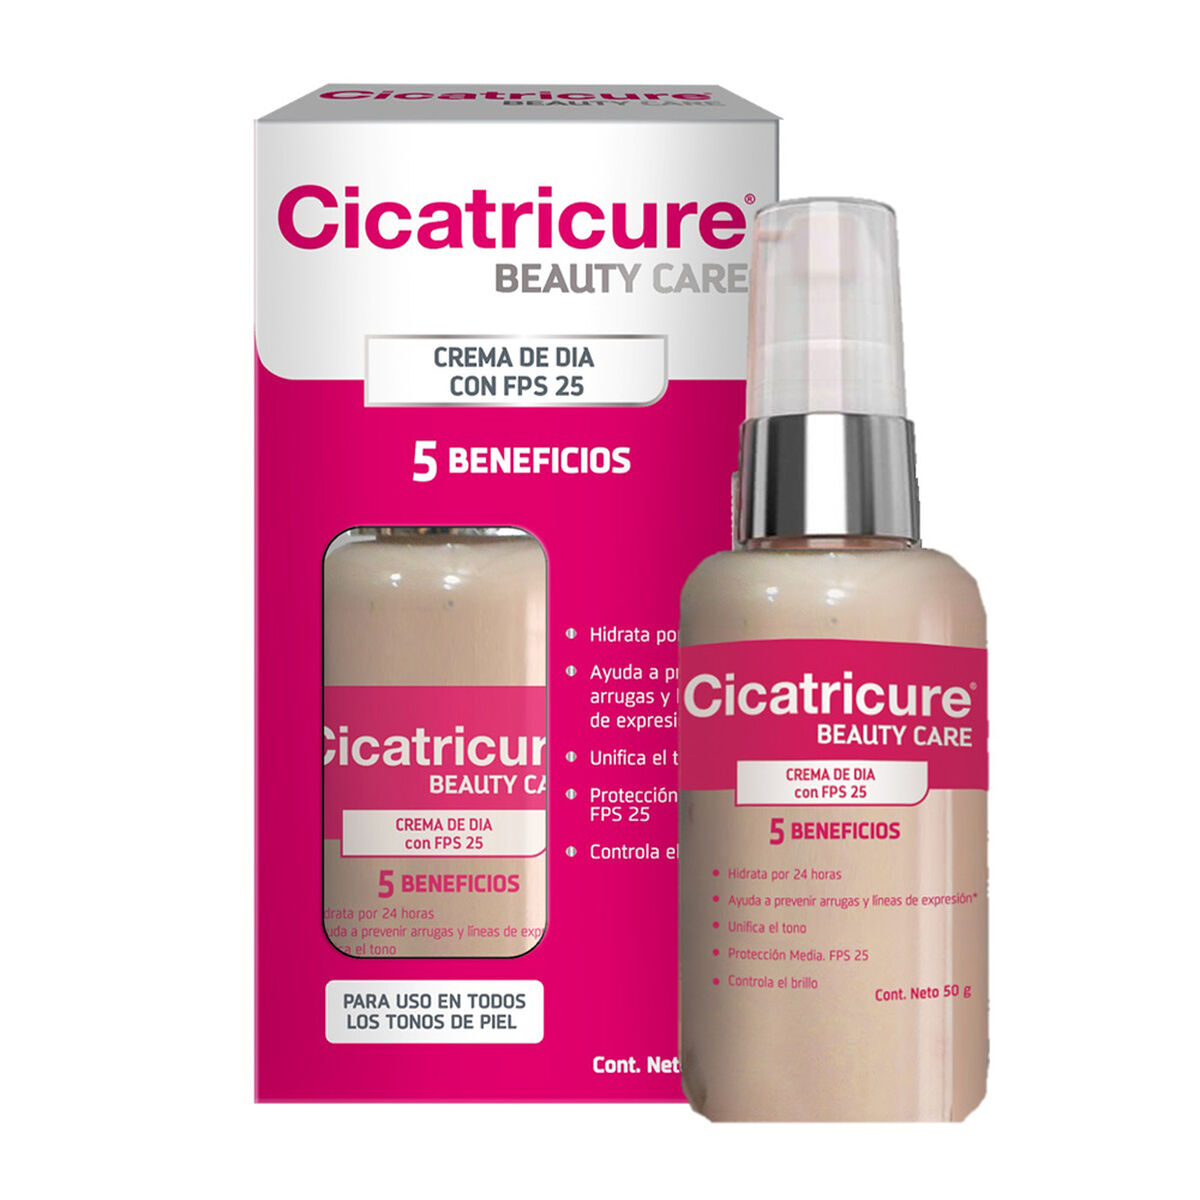 Cicatricure Beauty Care Crema 50 g + Acqua Defense Noche 50 g